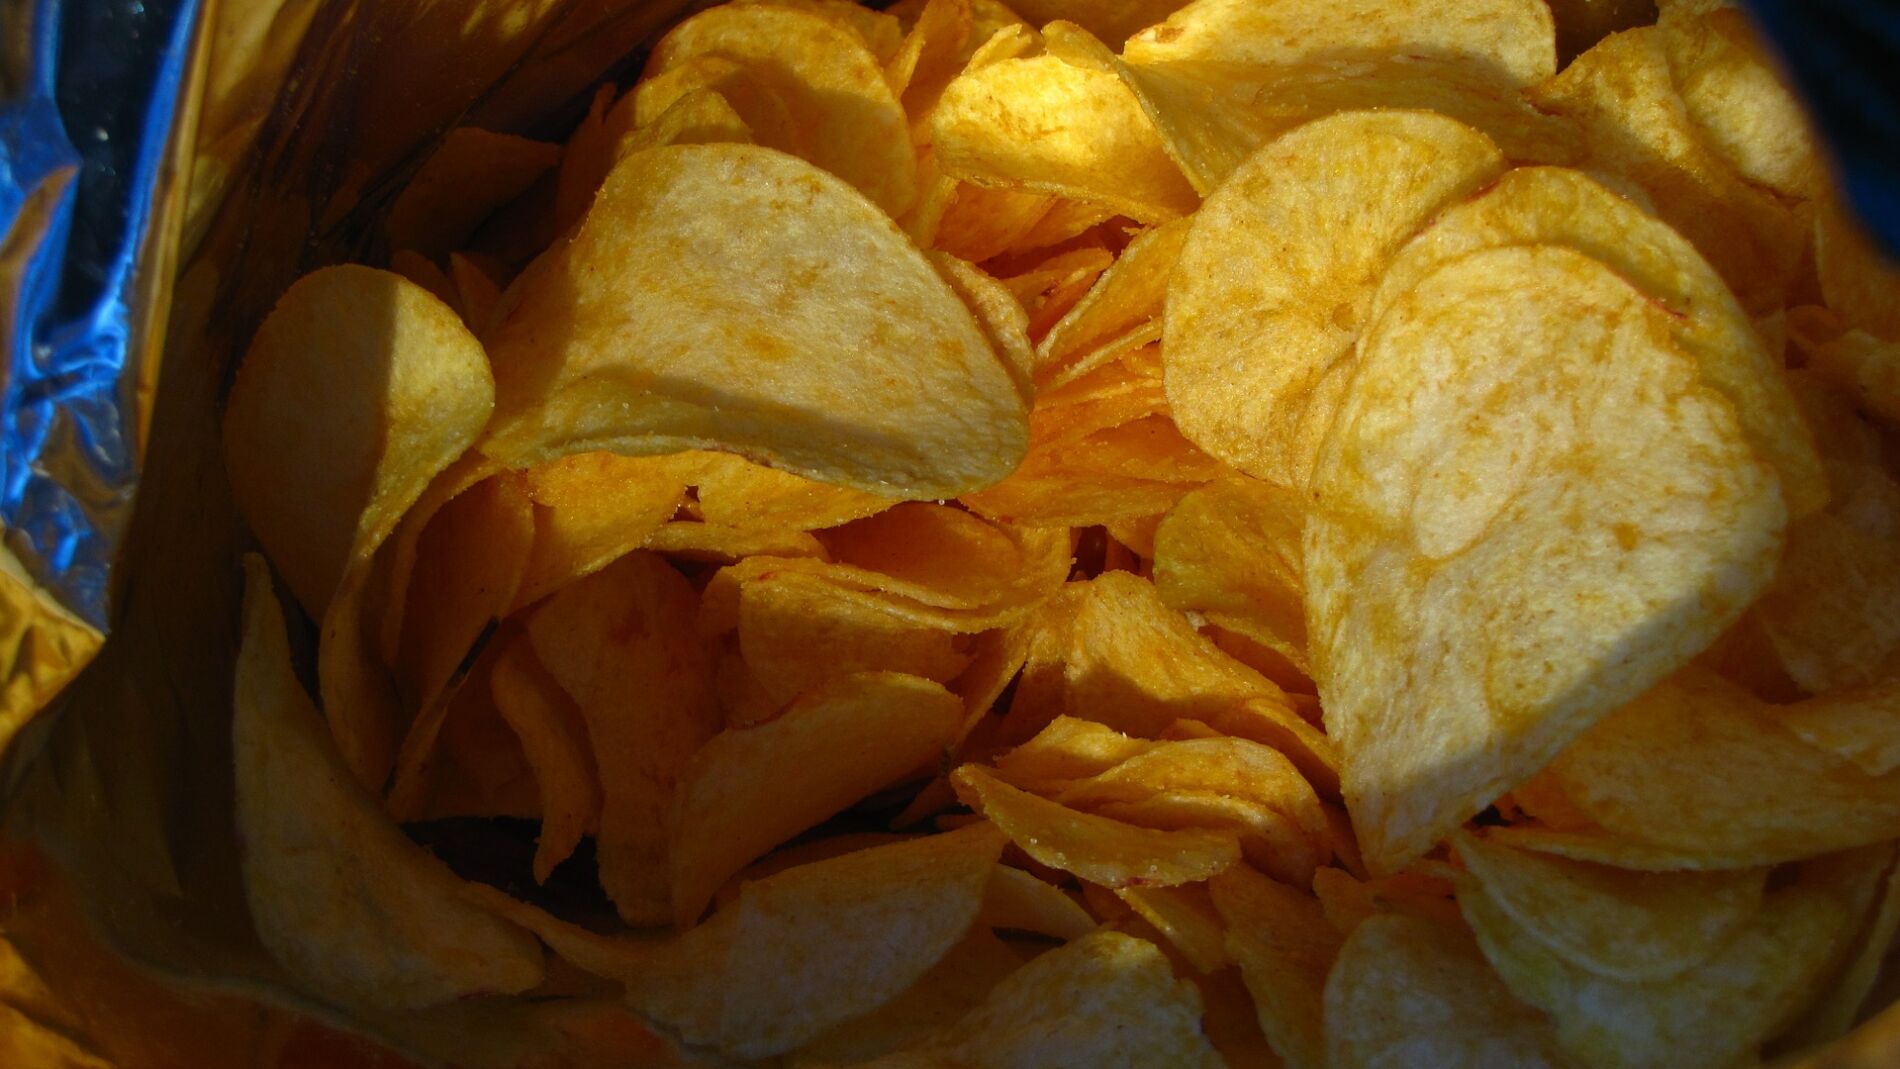 Pinzas cierra bolsas con forma de patatas fritas. Curiosite